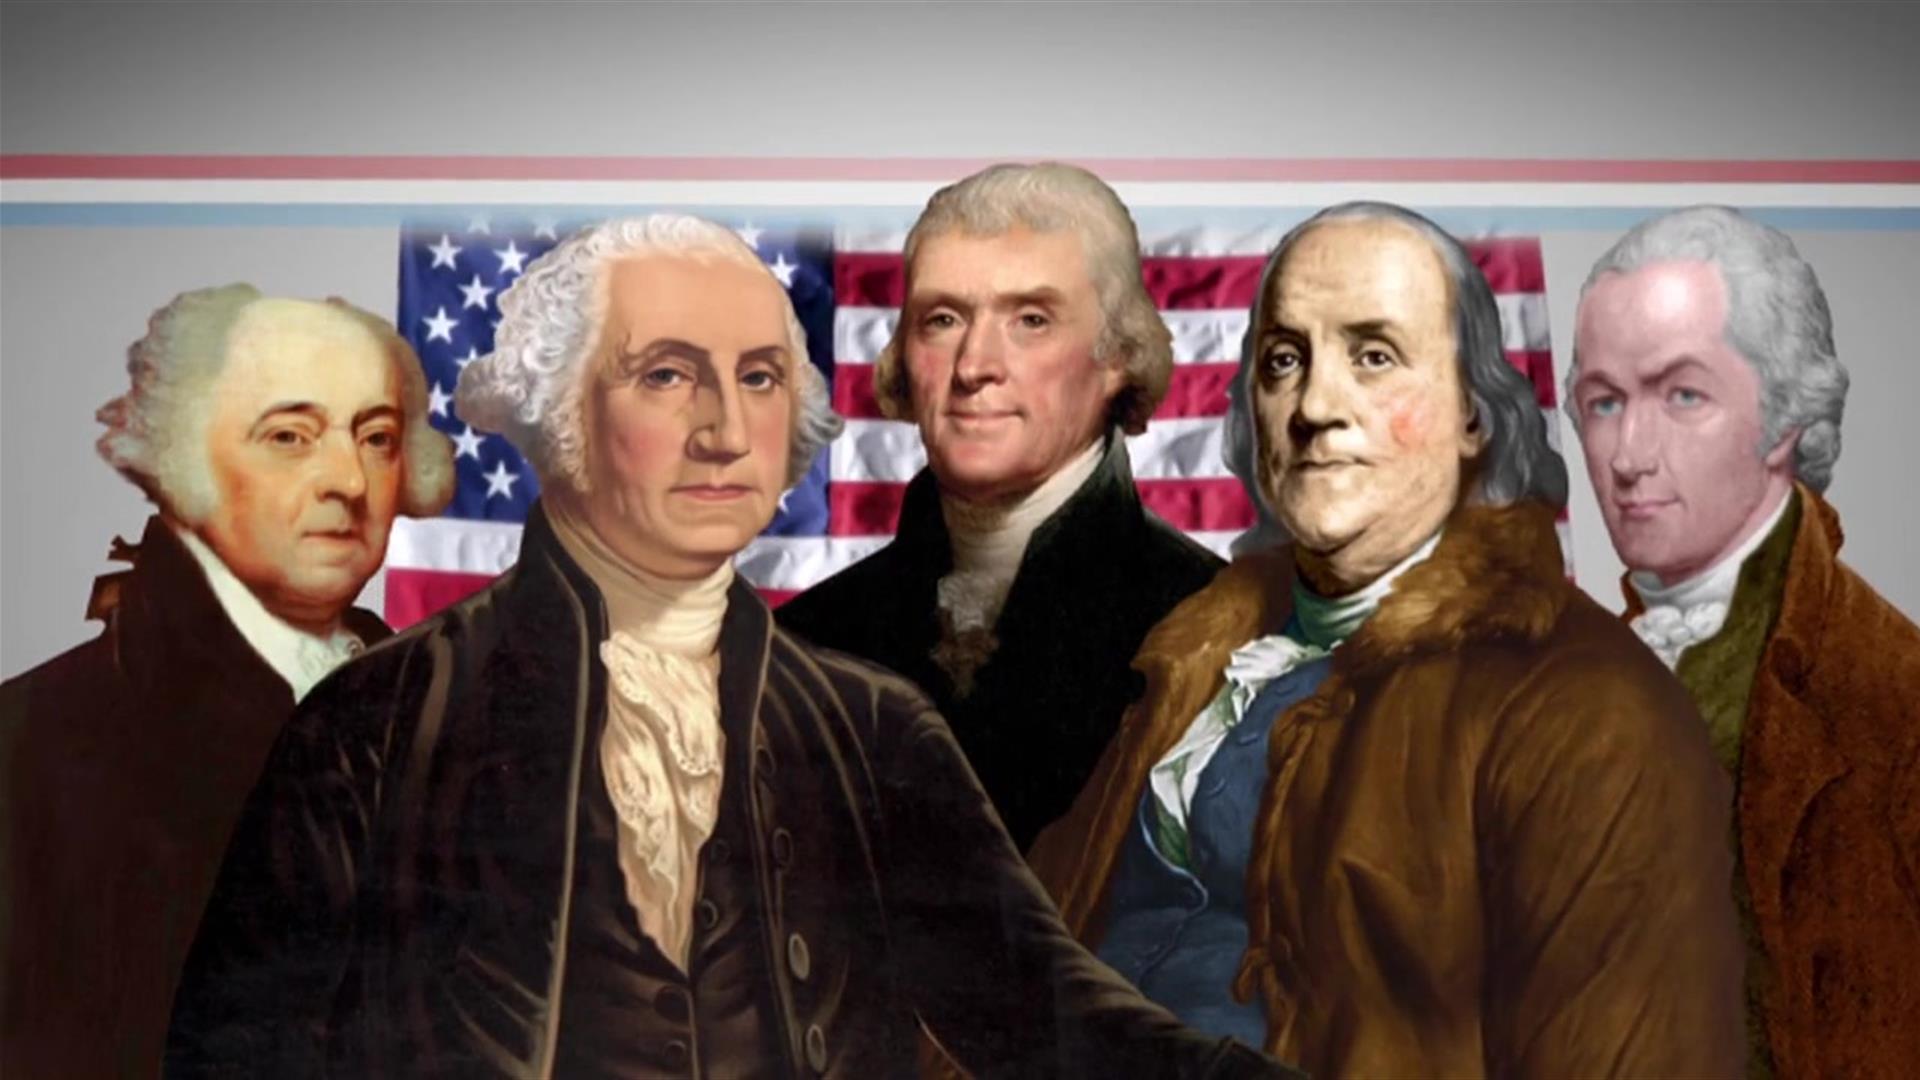 Constituição dos Estados Unidos: Tradução Oficial by Founding Fathers